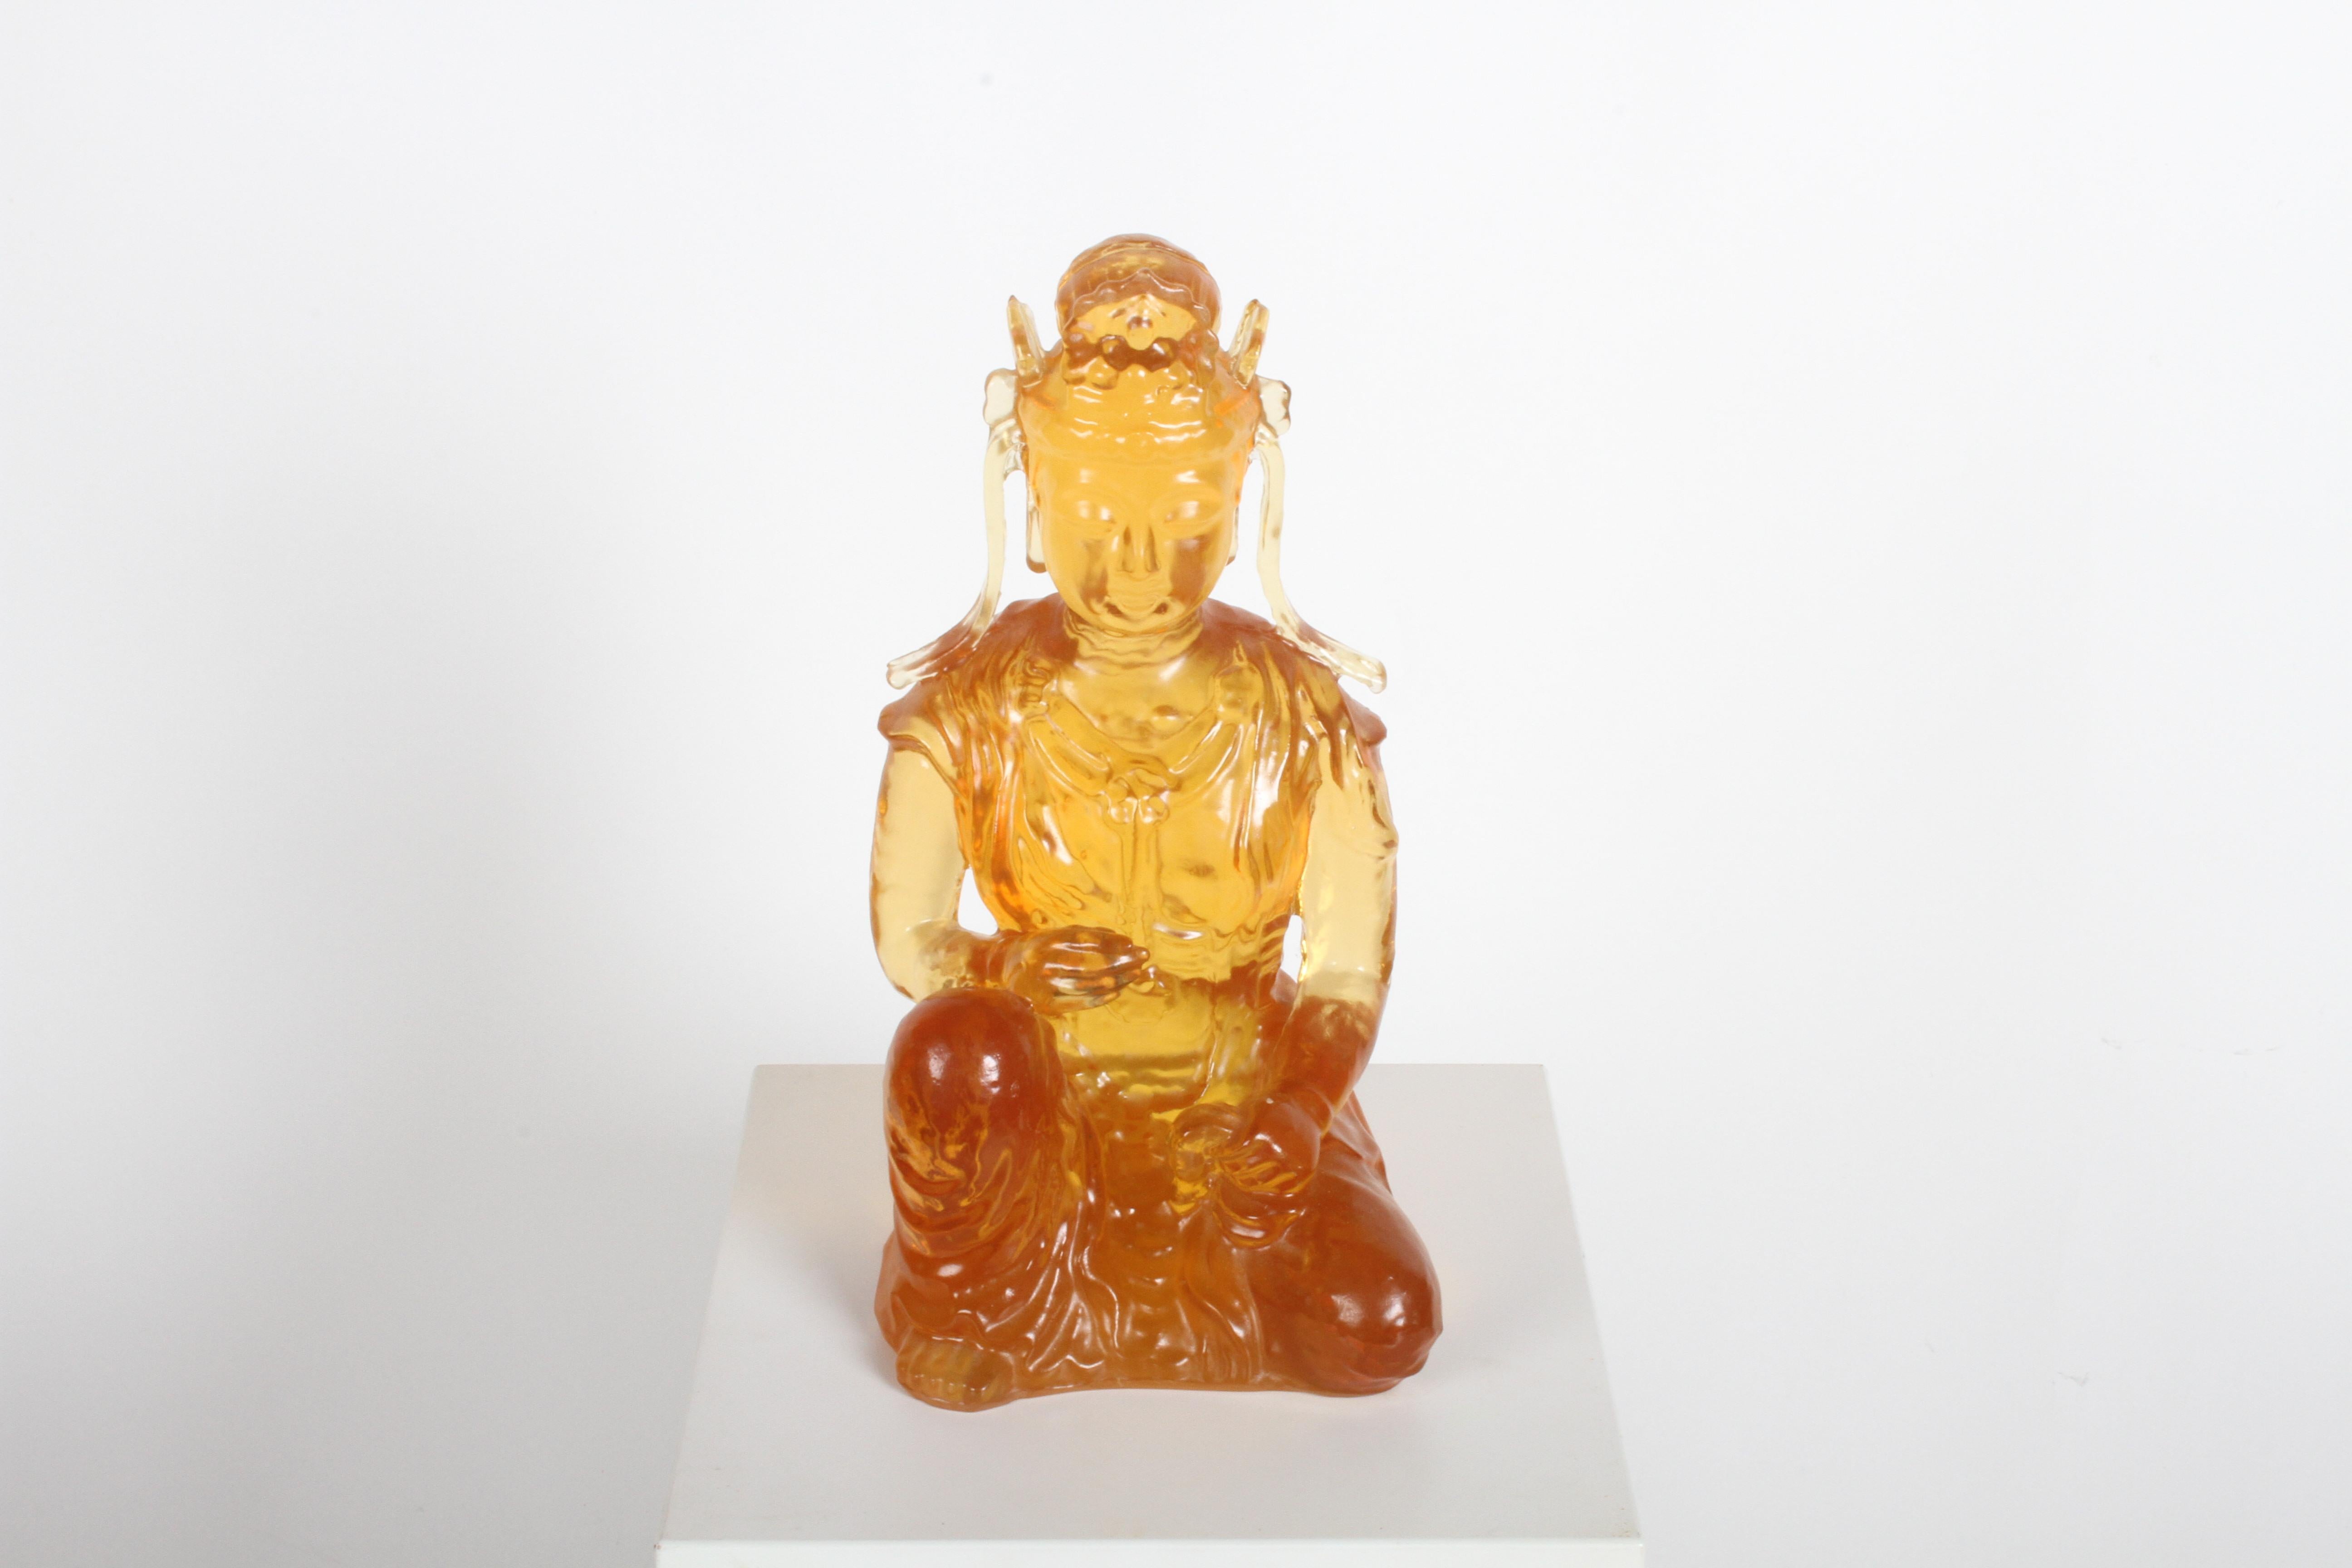 Magnifique Bouddha ou Guanyin en résine ambre Dorothy Thorpe, datant des années 1960. Non marqué, mais 100% Thorpe.